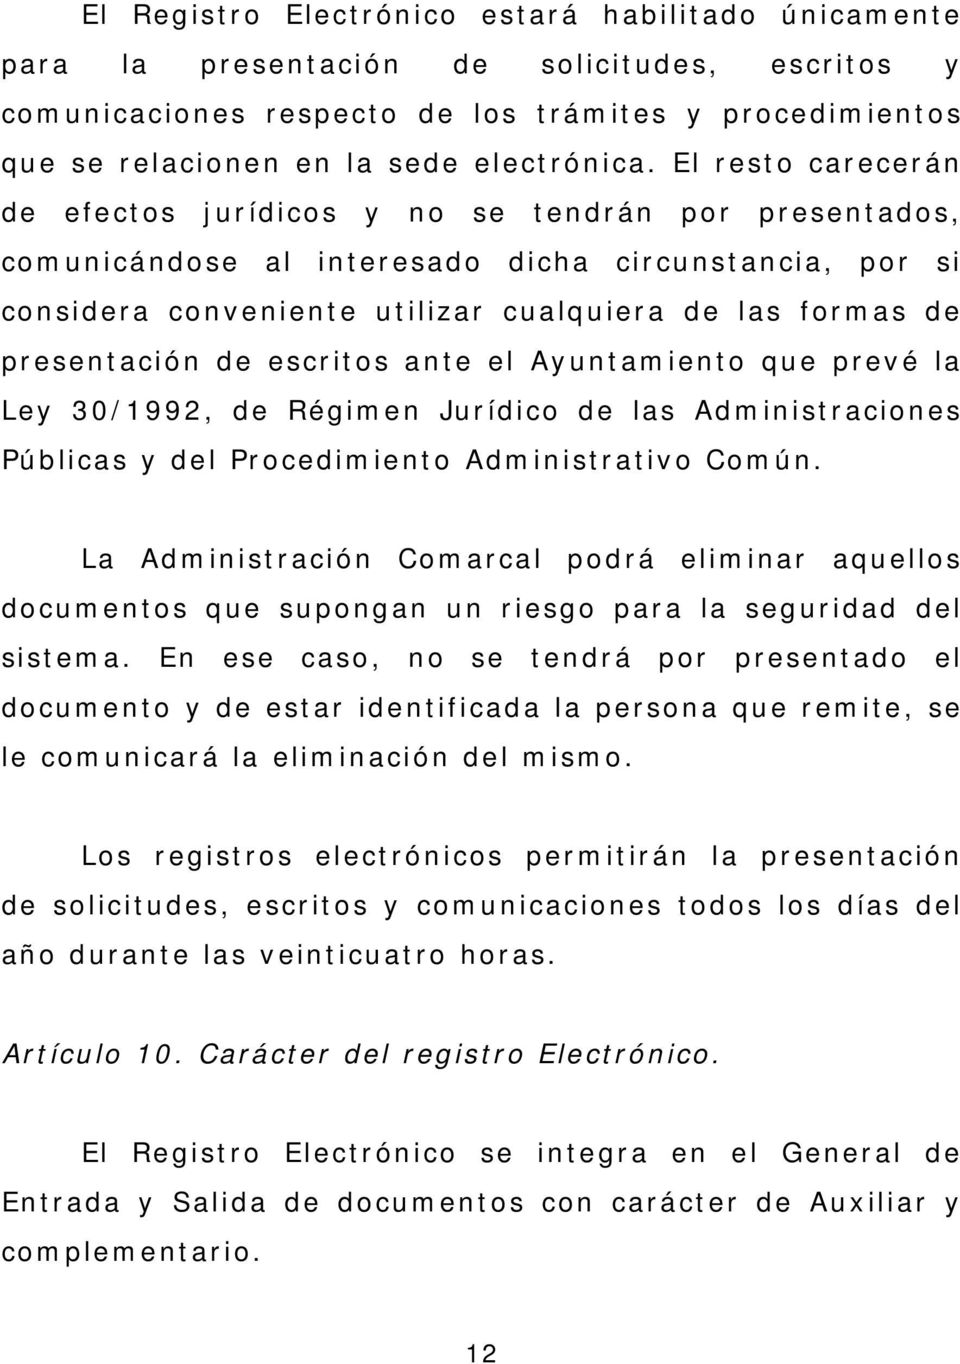 presentación de escritos ante el Ayuntamiento que prevé la Ley 30/1992, de Régimen Jurídico de las Administraciones Públicas y del Procedimiento Administrativo Común.